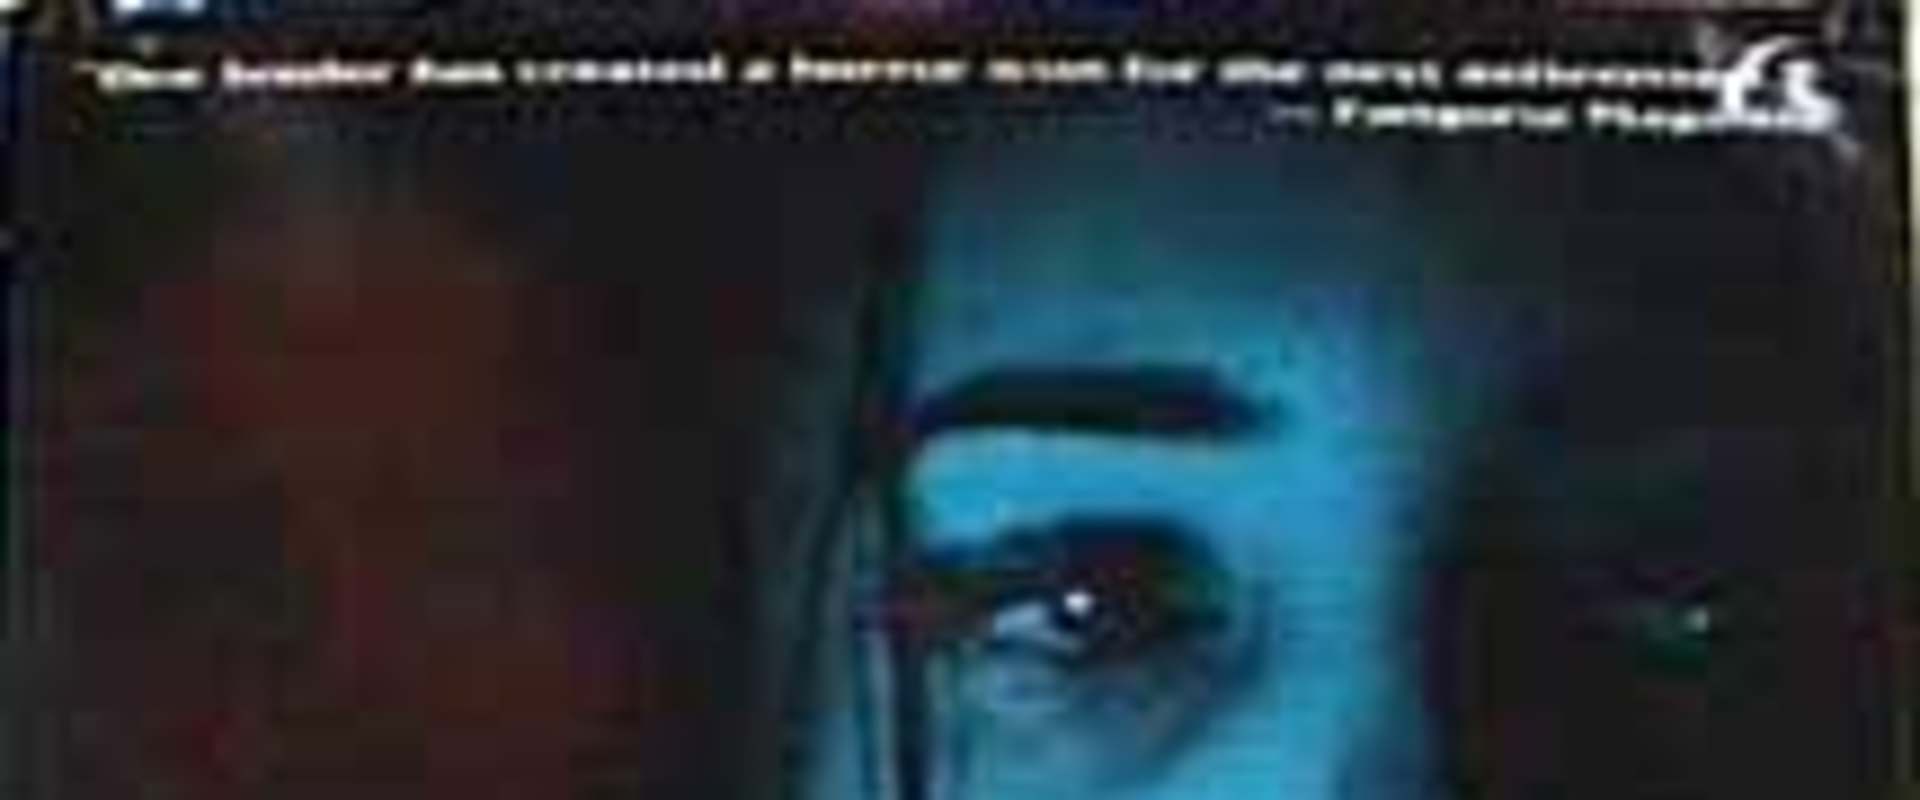 watch strangeland online free 1998